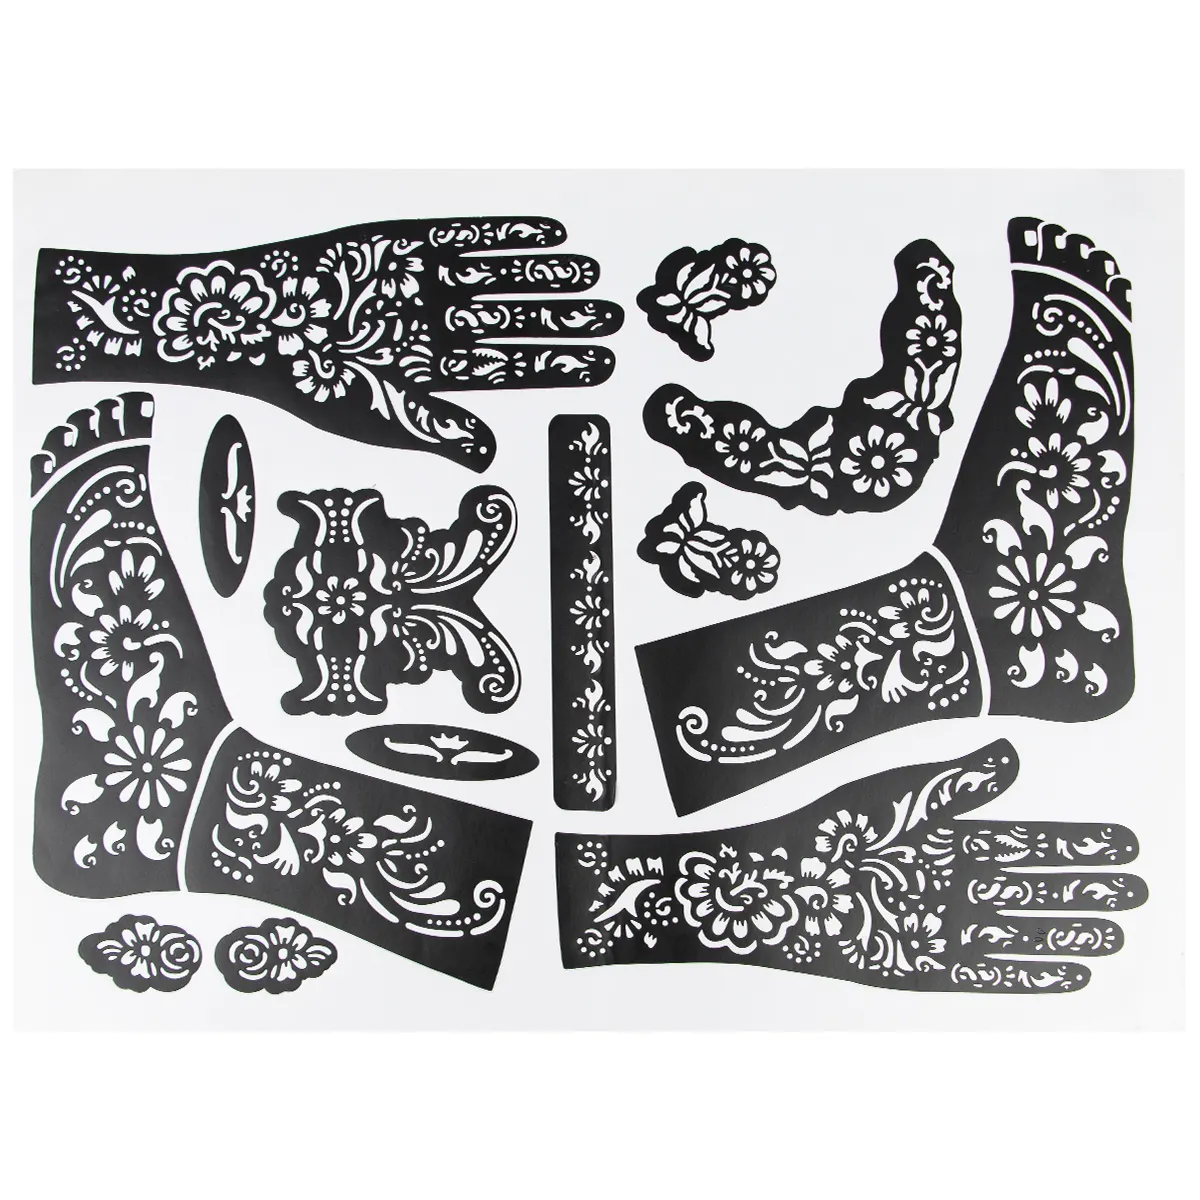 Moldes online reutilizáveis para flores temporárias, moldes personalizados para fazer desenho em negrito, 20 adesivos de henna Mehndi para pés e mãos